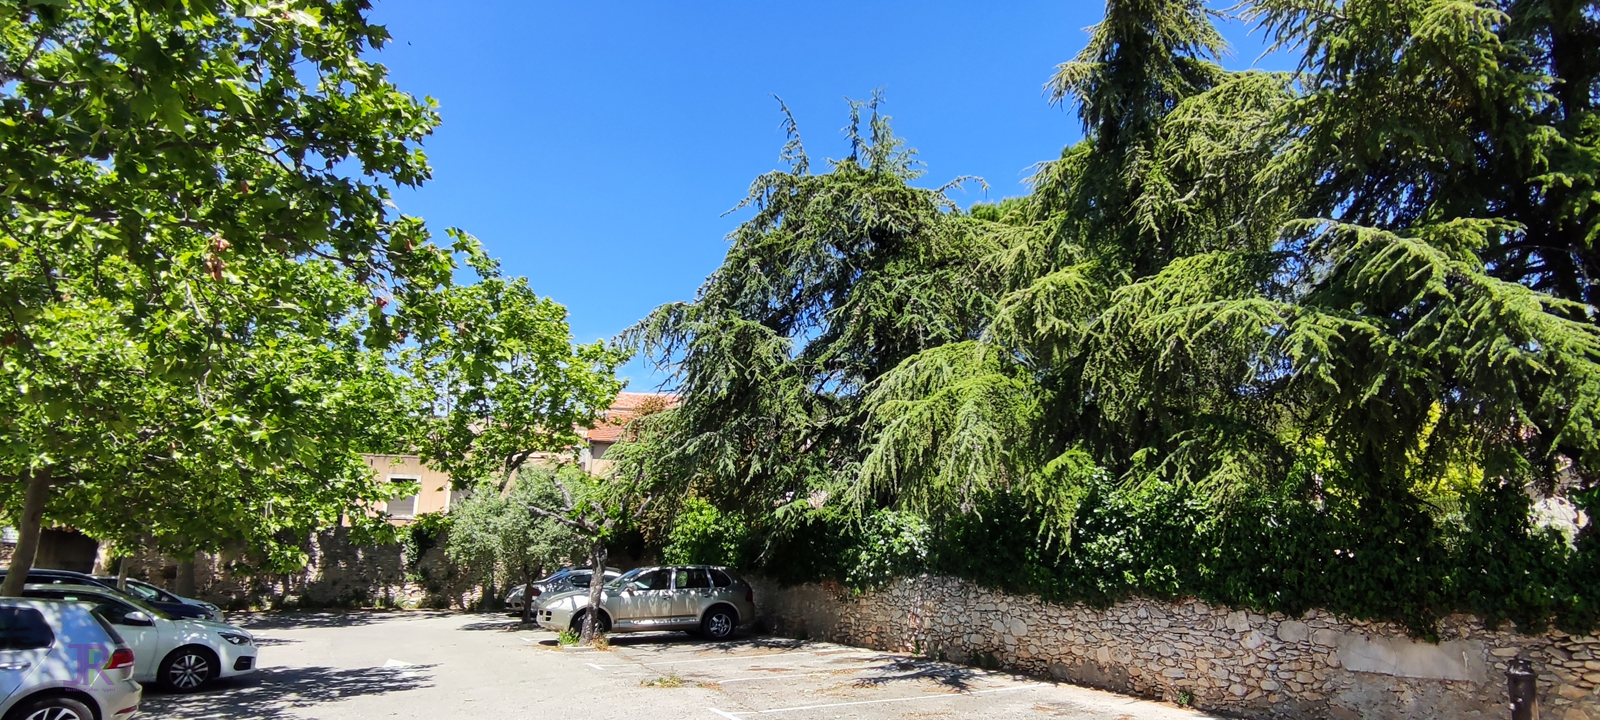 batiments la résidence Jehan Rippert parking village - St Saturnin les Apt Ehpad en Vaucluse